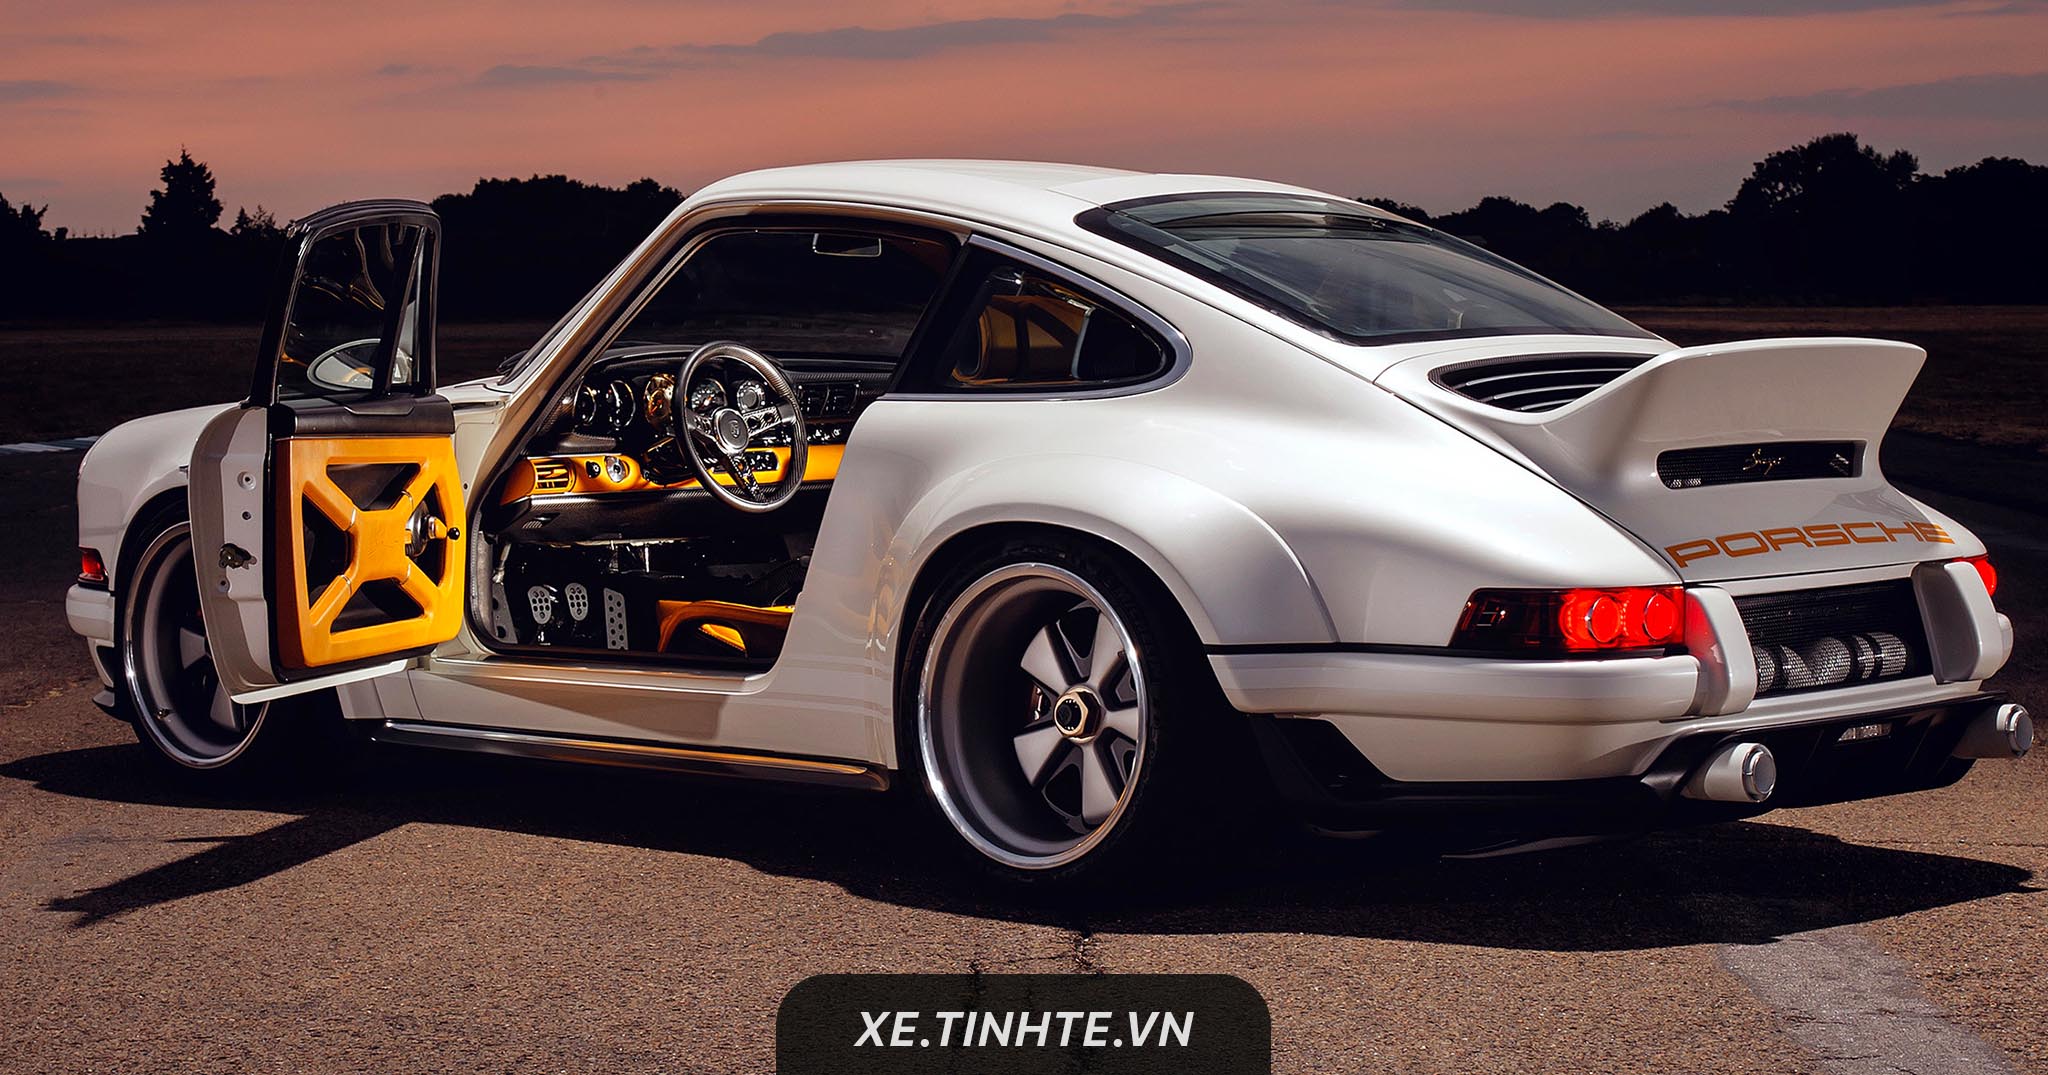 Singer ra mắt dự án Porsche 964 mạnh 500 mã lực, nhẹ hơn 386 kg so với nguyên bản